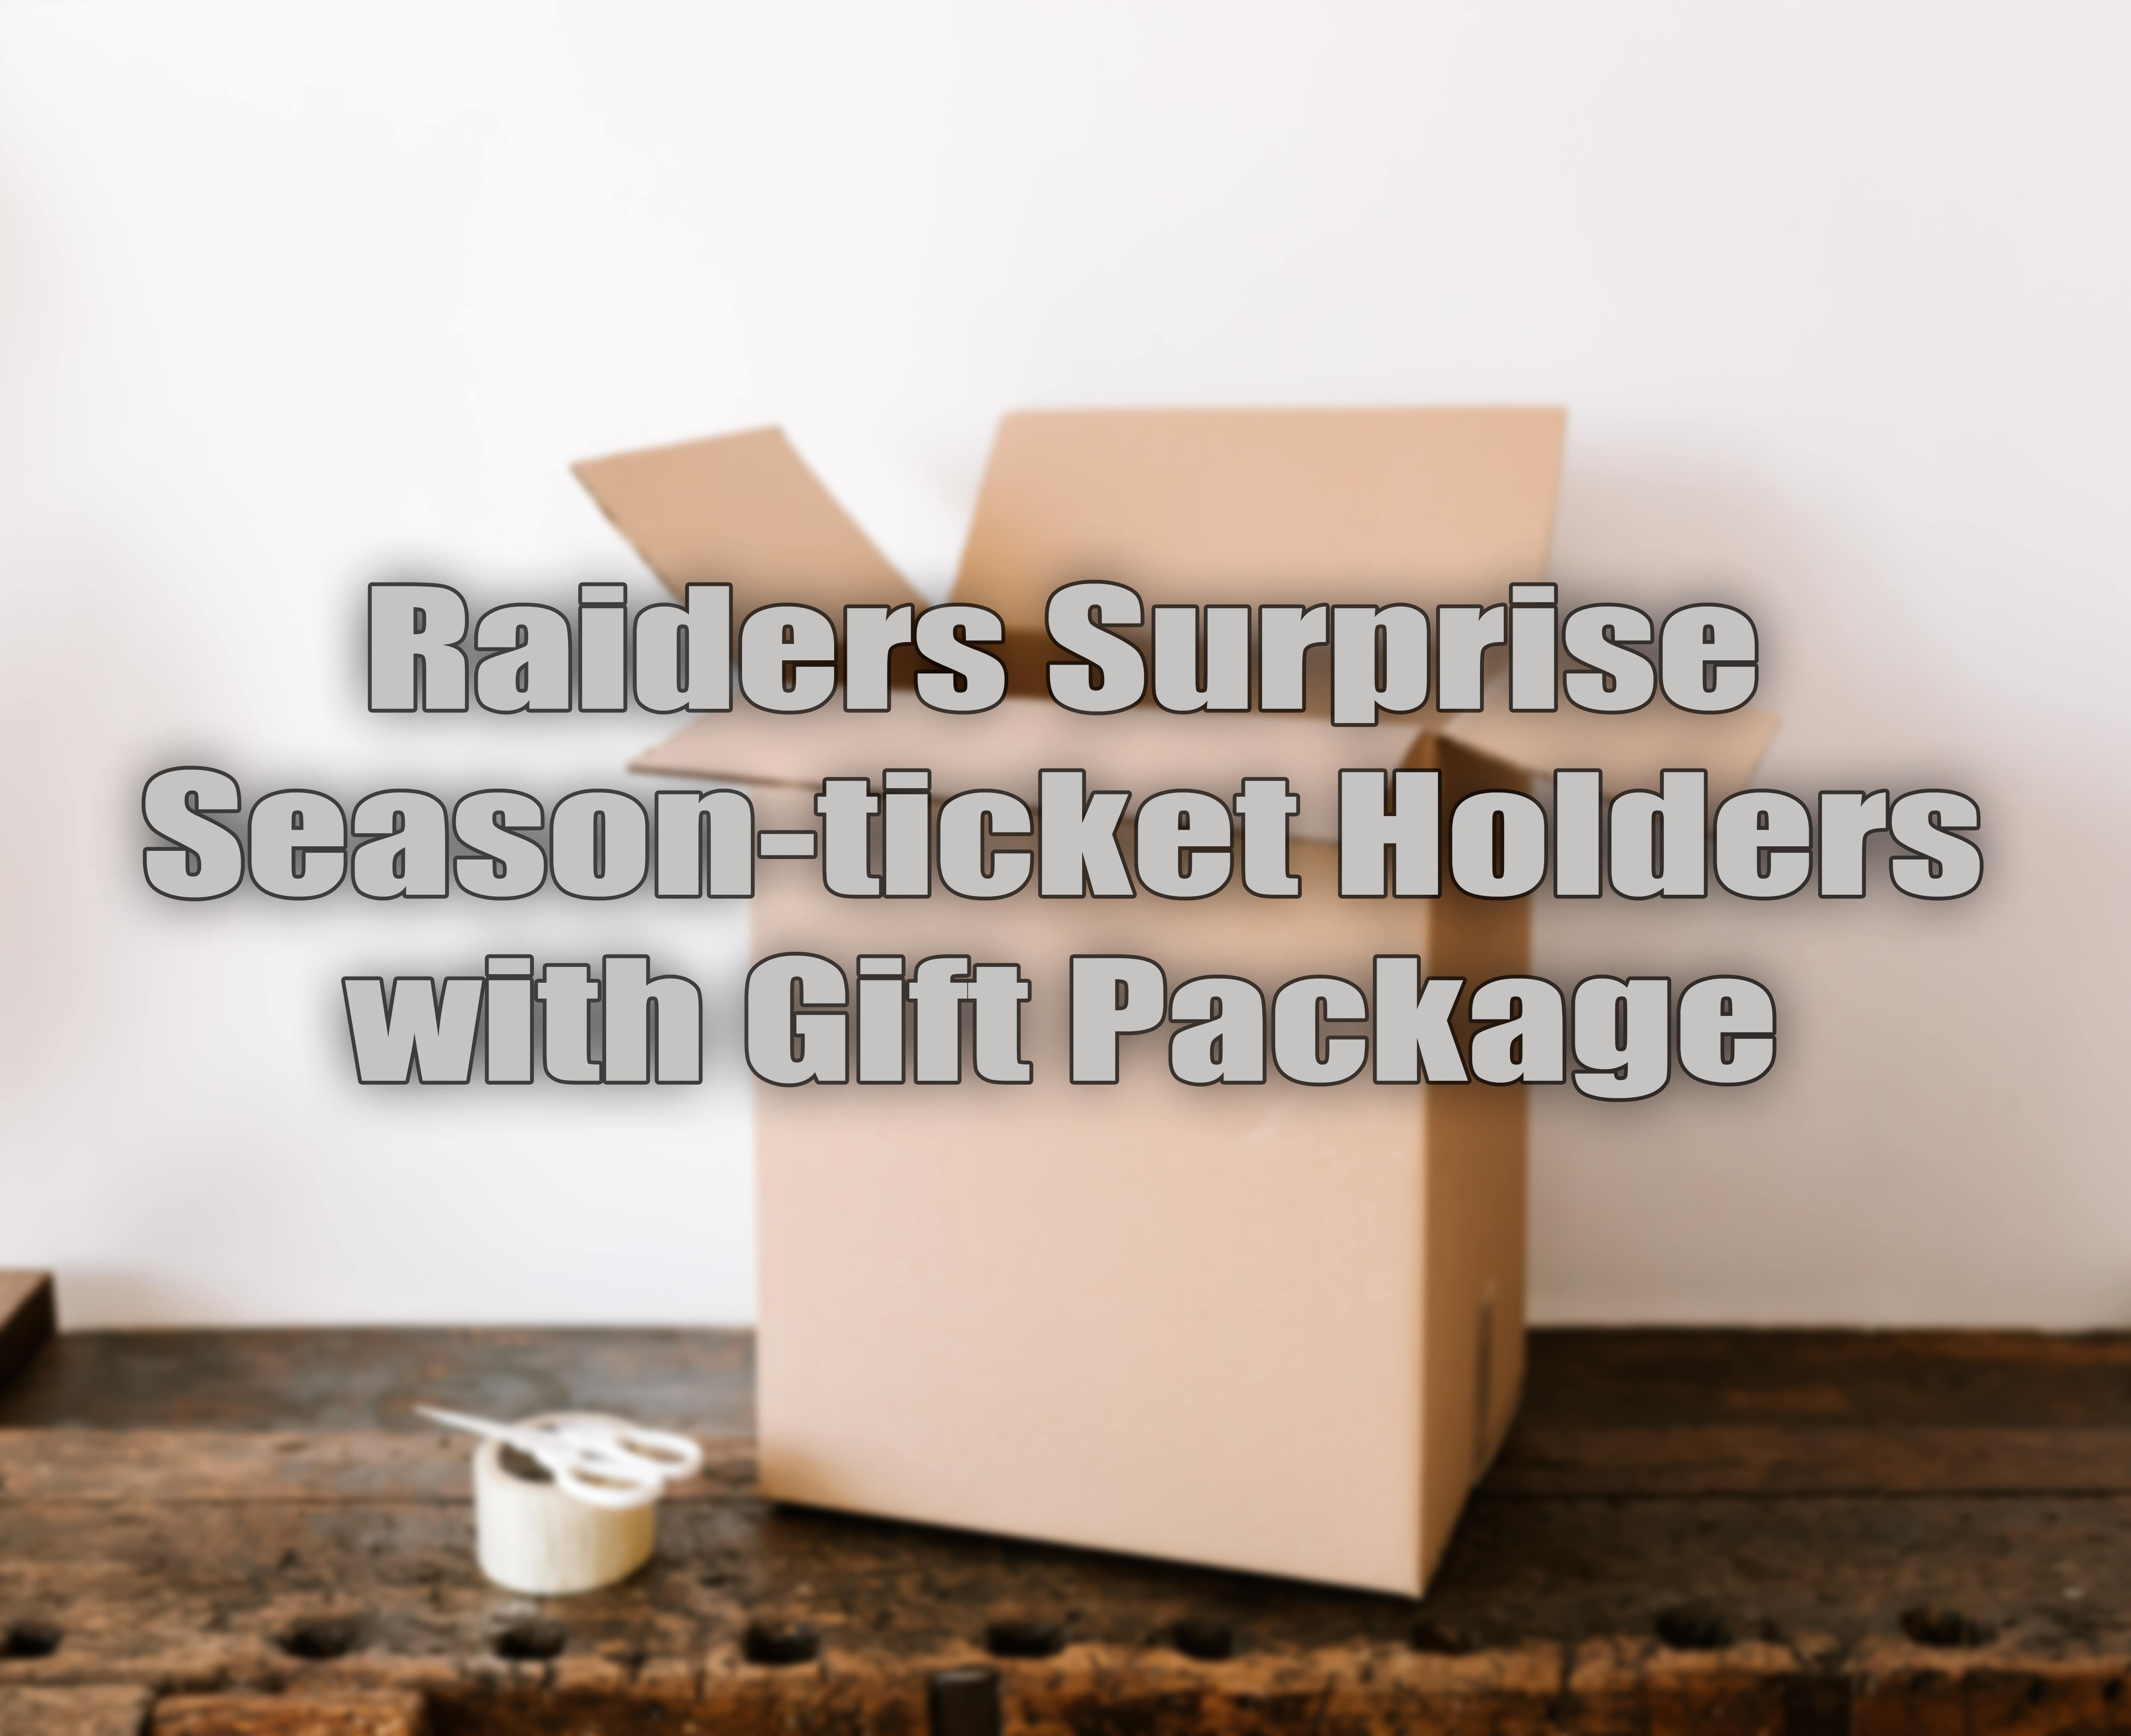 Gift Package by Raiders LV.jpg